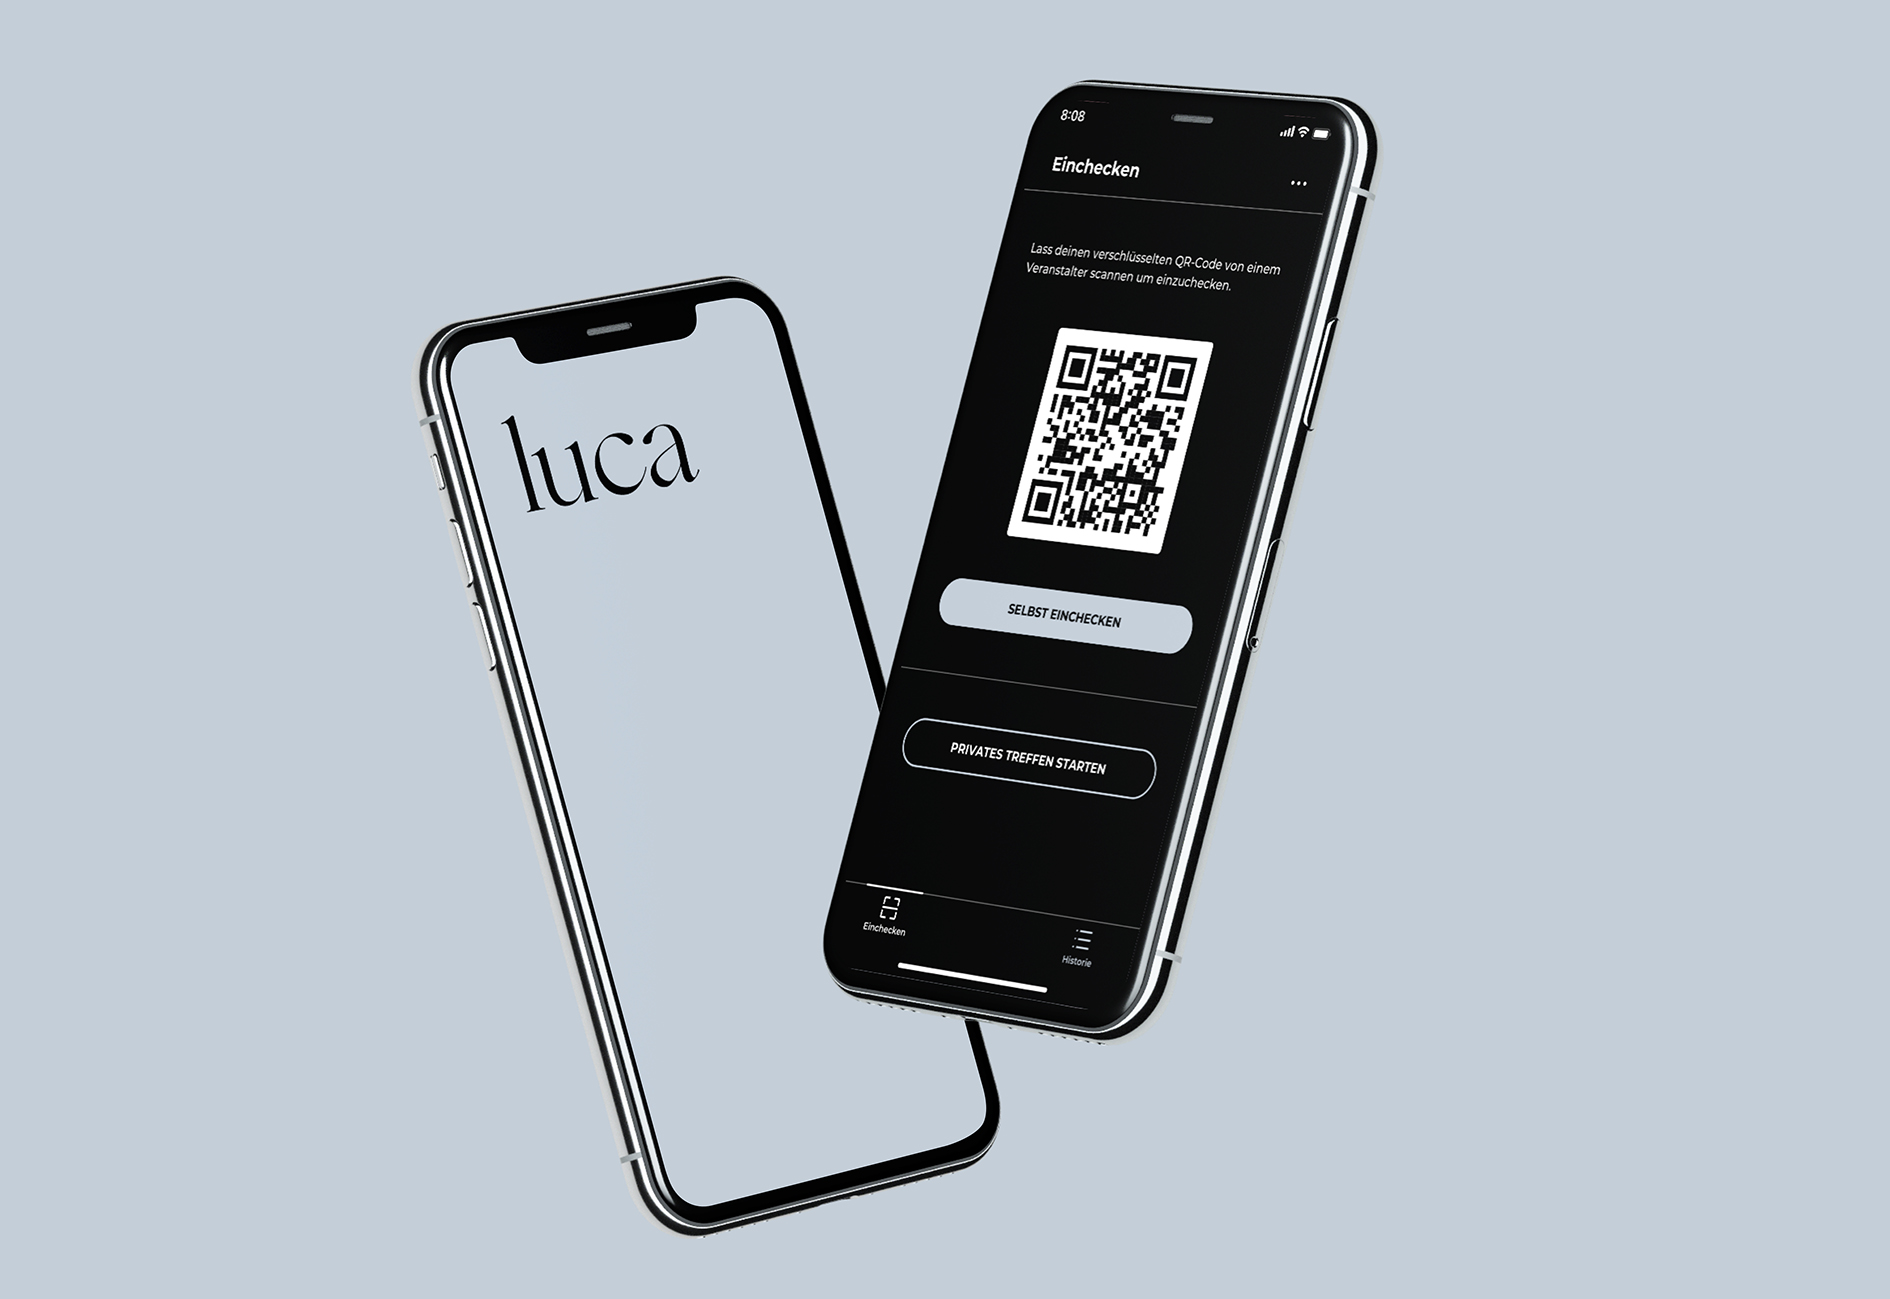 Luca-App wertet aus